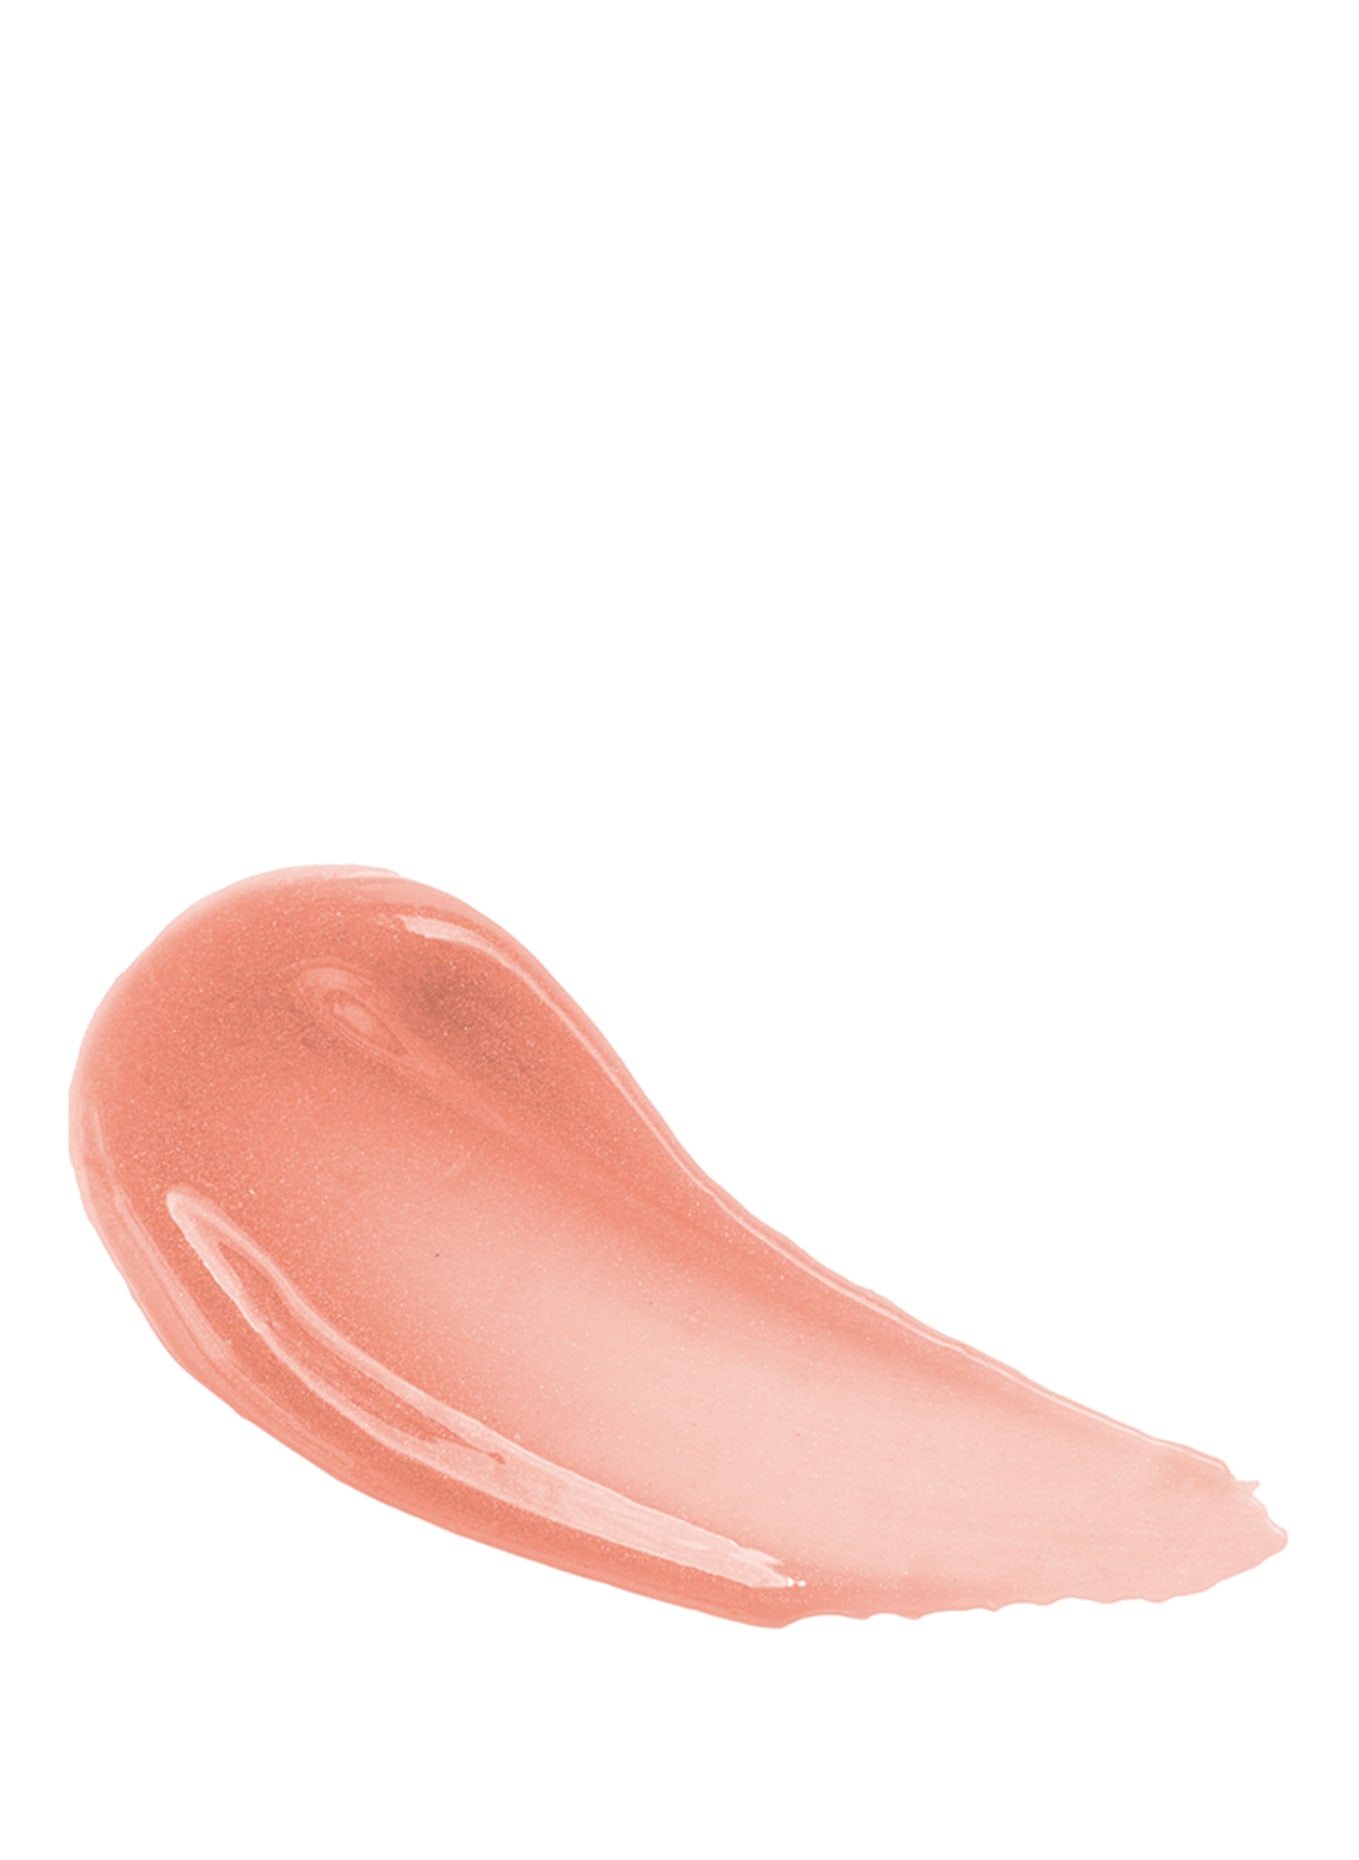 UND GRETEL KNUTZEN SHIMMER, Farbe: Nude Shimmer 07 (Bild 2)